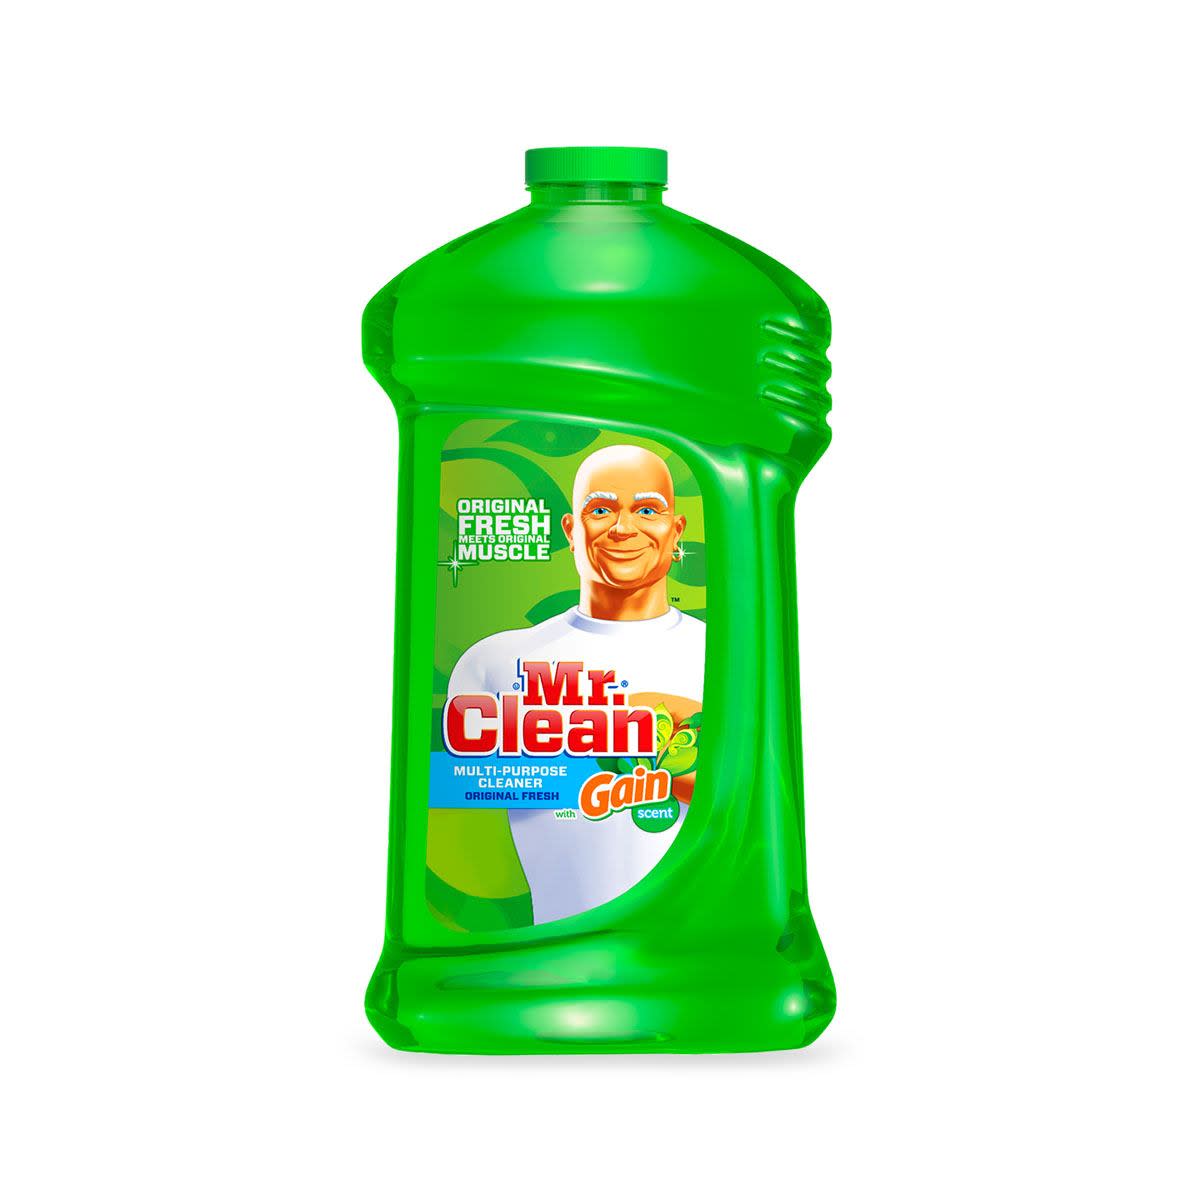 Mr. Clean Multi-Surfaces Liquid Cleaner with Gain Original Scent